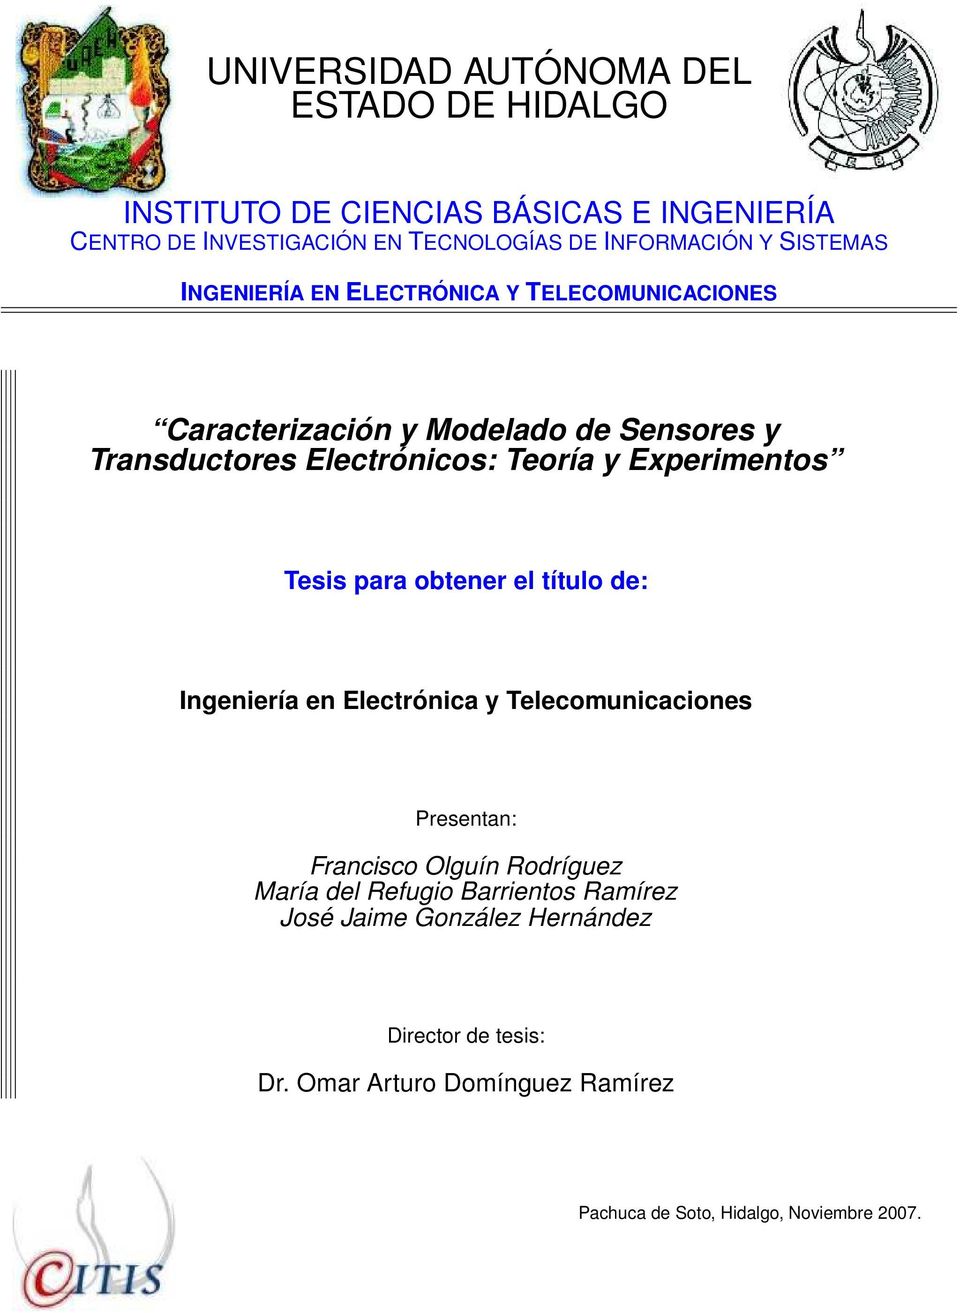 Experimentos Tesis para obtener el título de: Ingeniería en Electrónica y Telecomunicaciones Presentan: Francisco Olguín Rodríguez María del